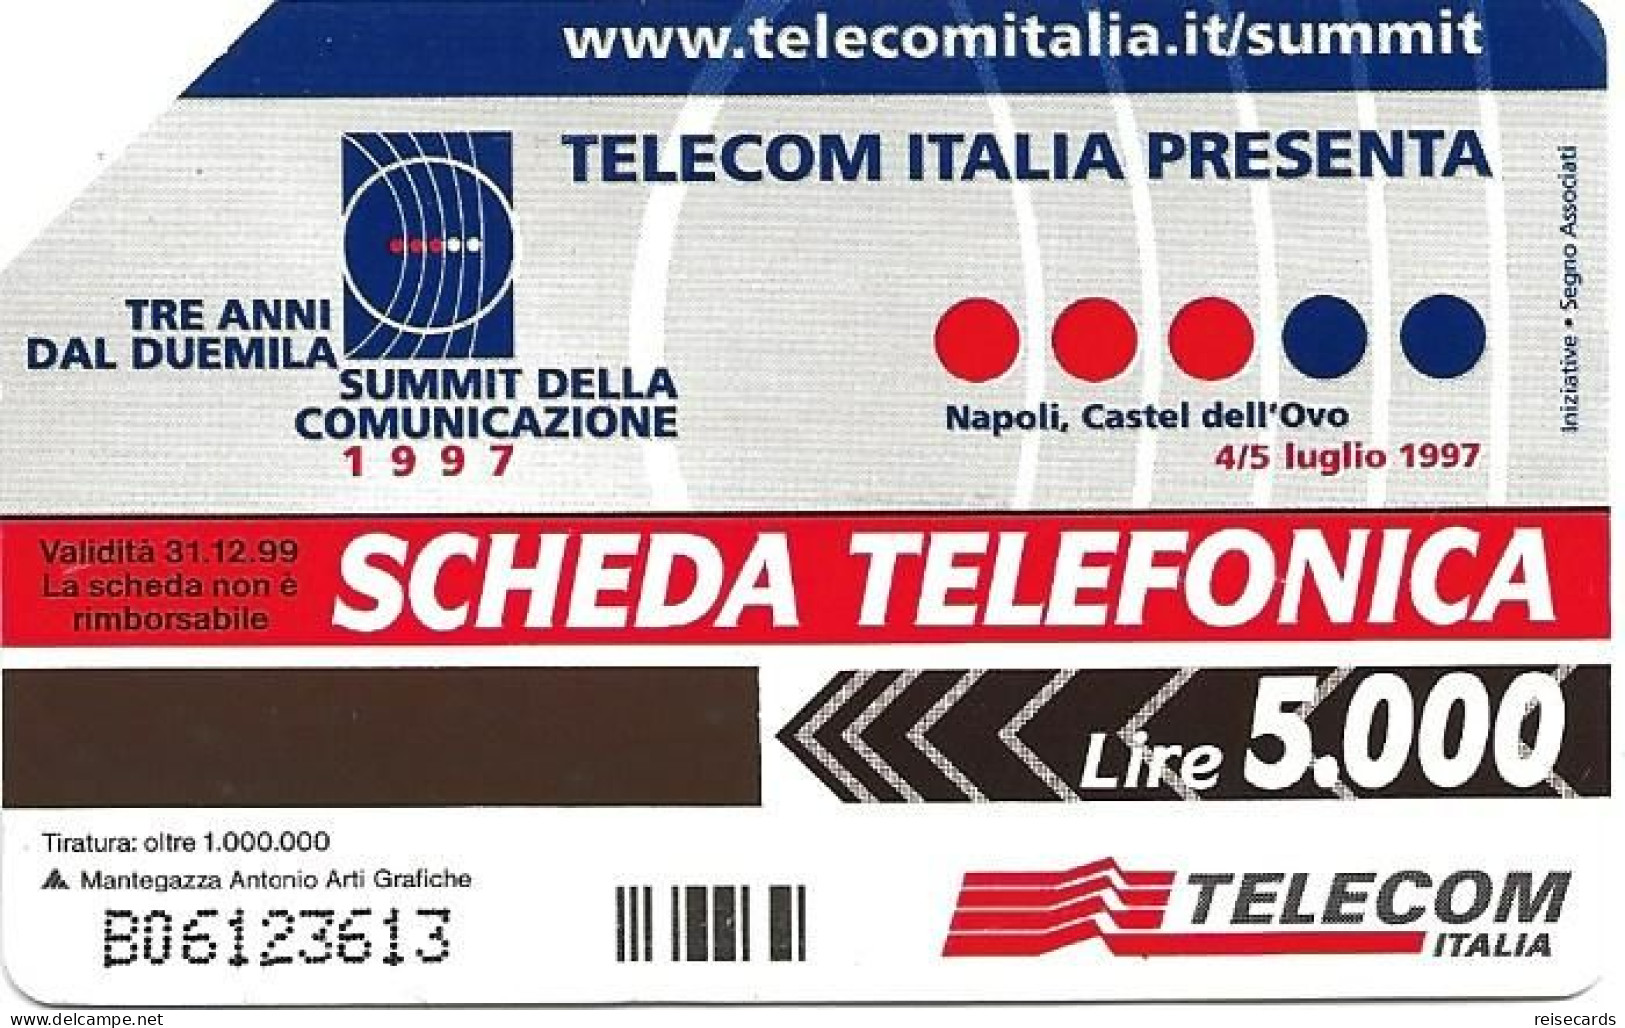 Italy: Telecom Italia - Summit Della Comunicazione, Napoli Castel Dell'Ovo - Public Advertising